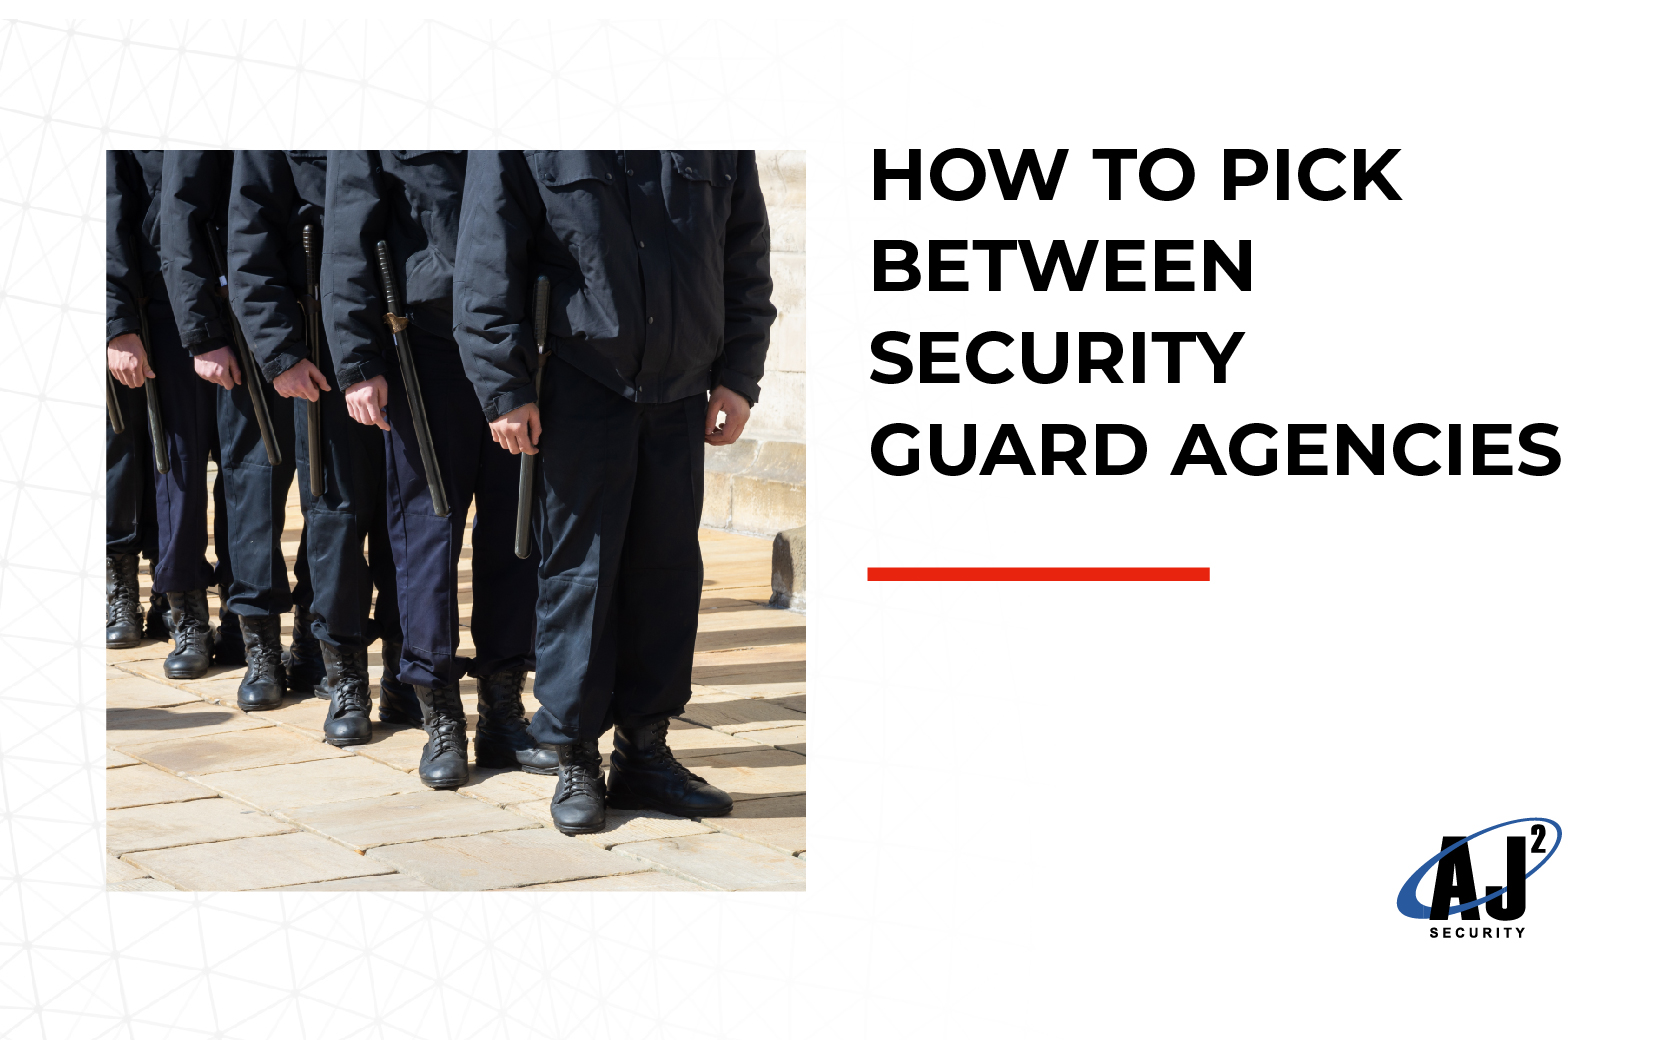 Security Guard Agencies